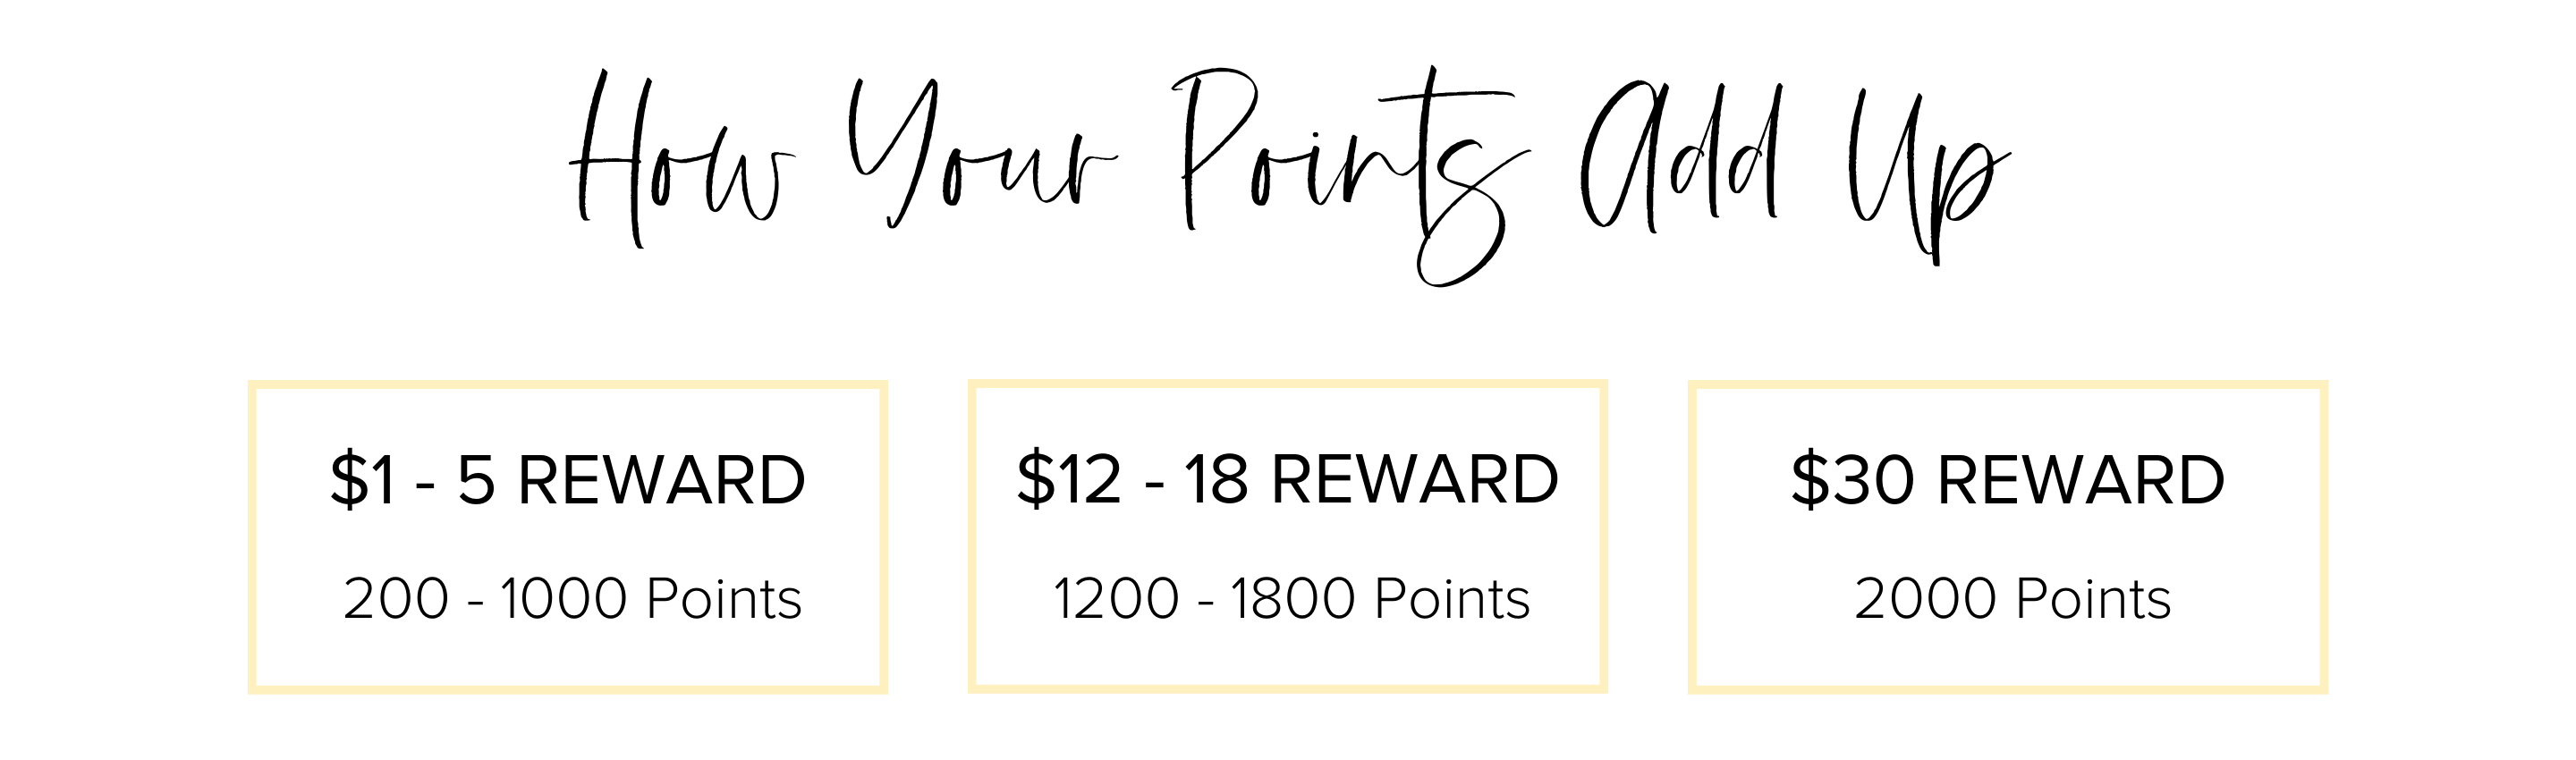 How your points add up. $1 - $5 reward 200 - 1000 points. $12 - $18 reward 1200 - 1800 points. $30 reward 2000 points